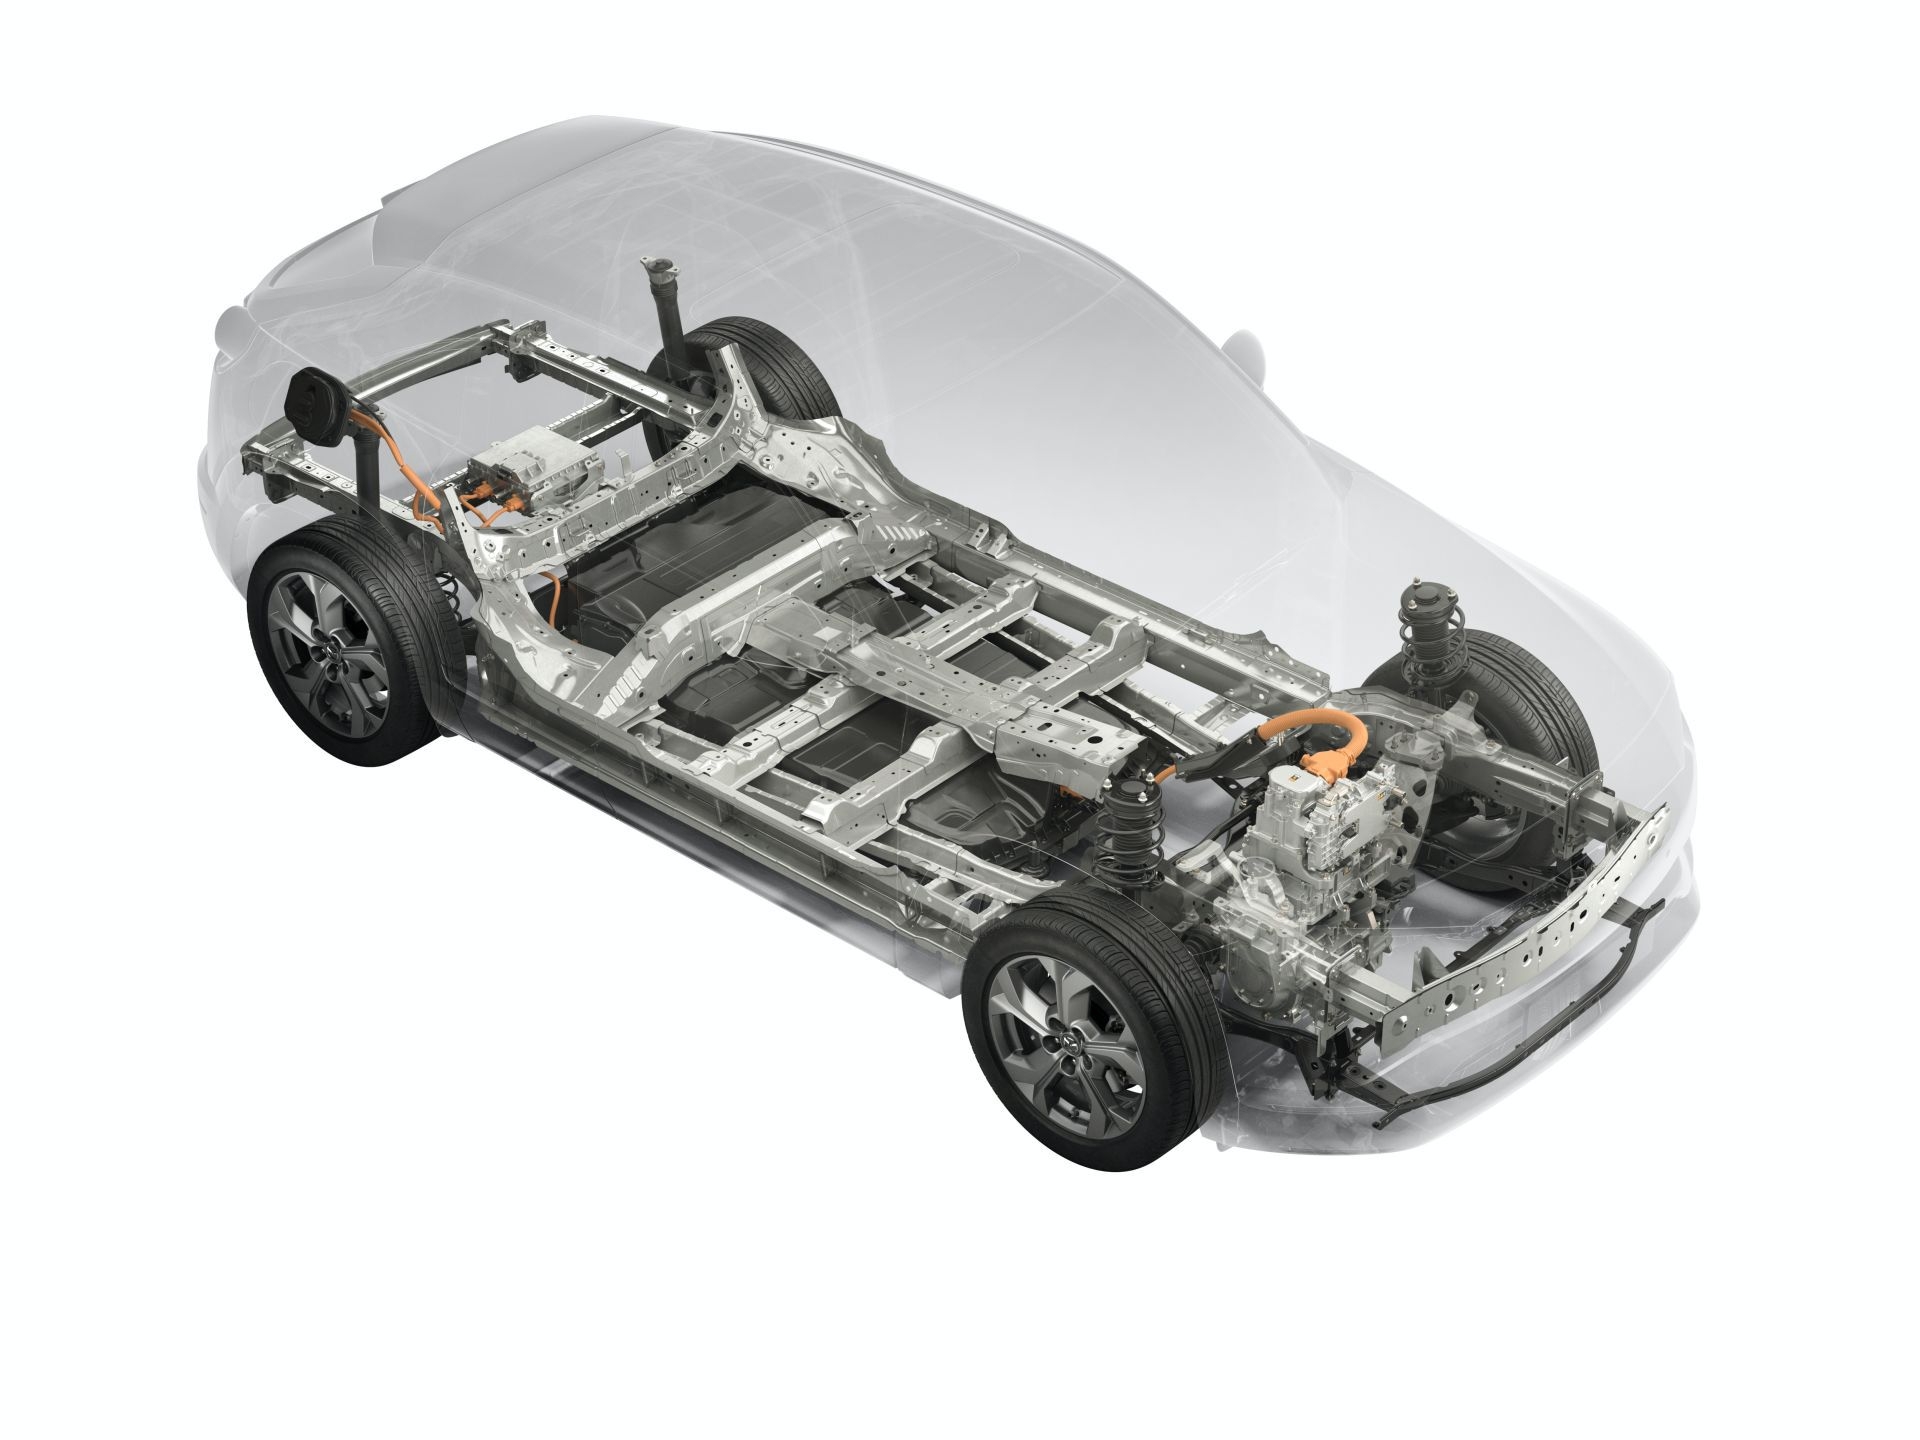 พร้อมบุกทั่วยุโรป! Mazda MX-30 รถยนต์พลังงานไฟฟ้าวางกำหนดขาย มิ.ย.นี้